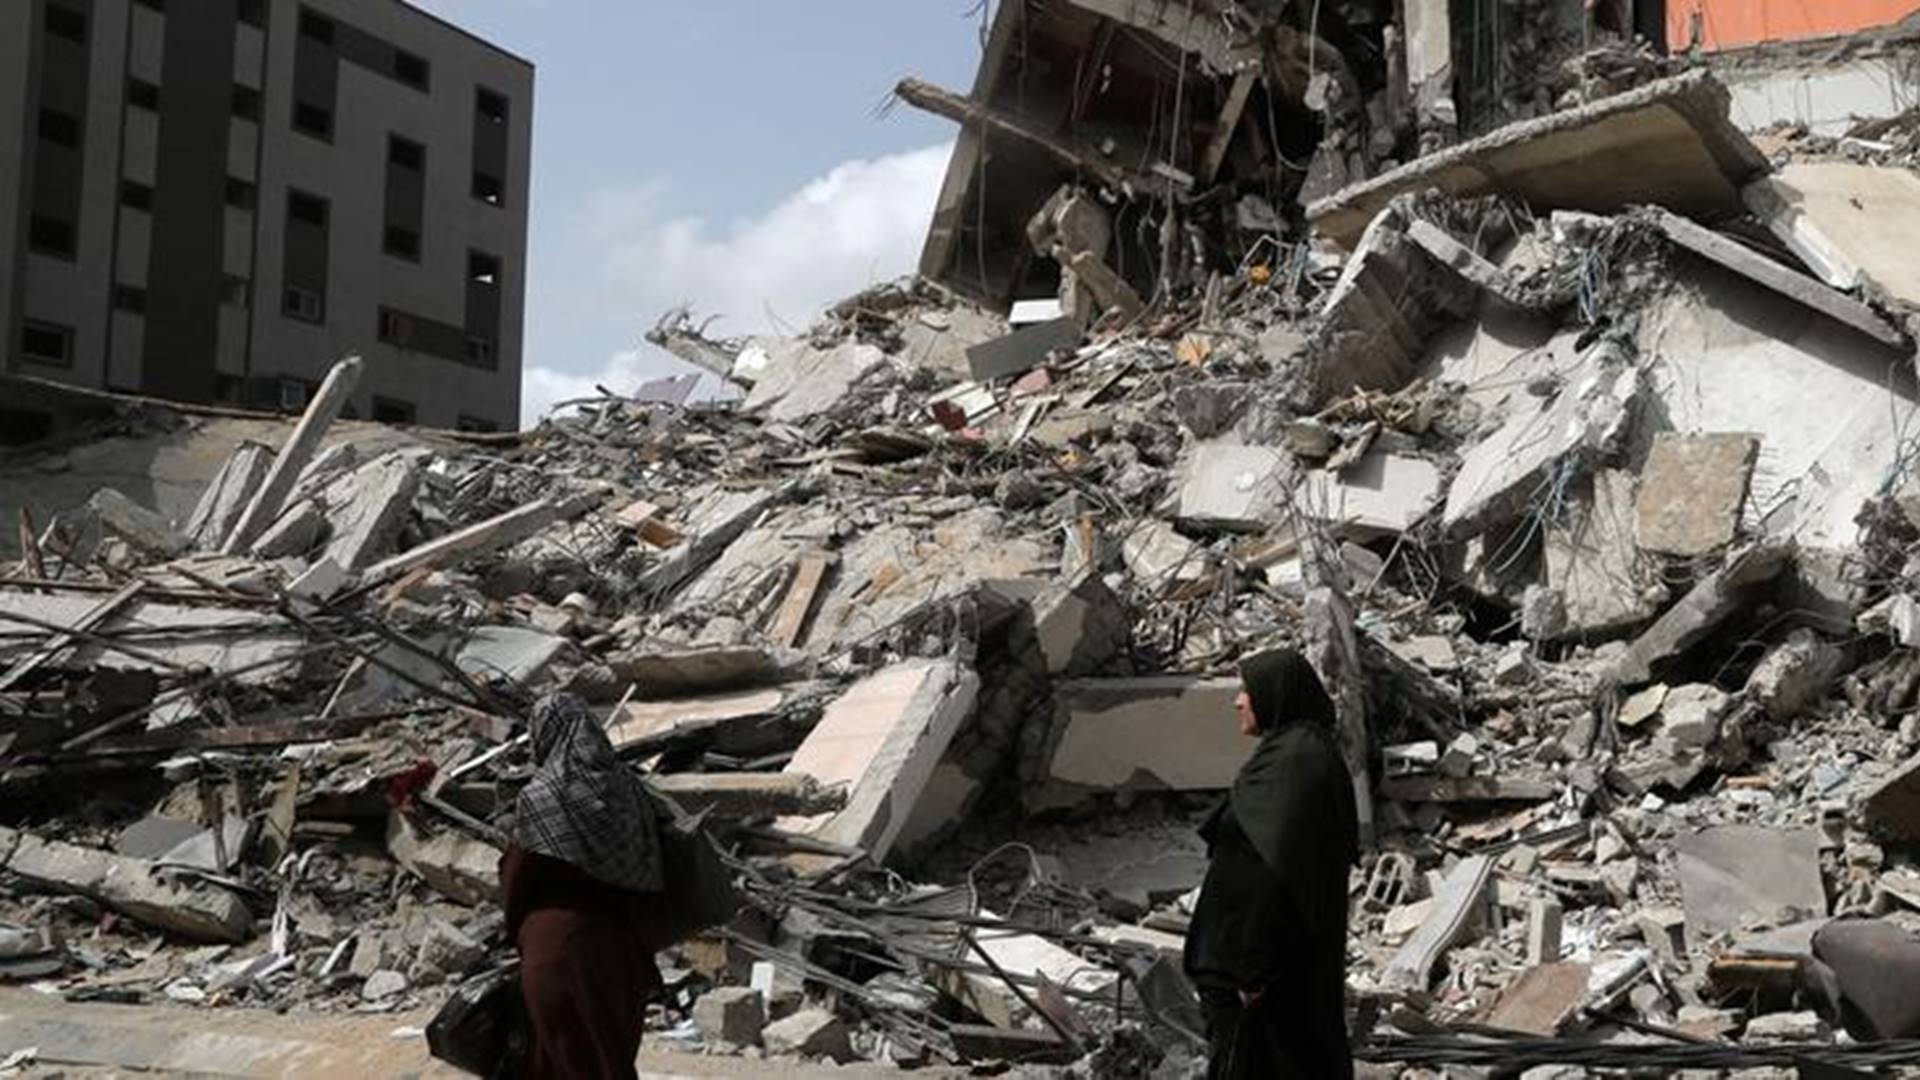 Israel-Hamas conflict: Biden vows to rebuild Gaza